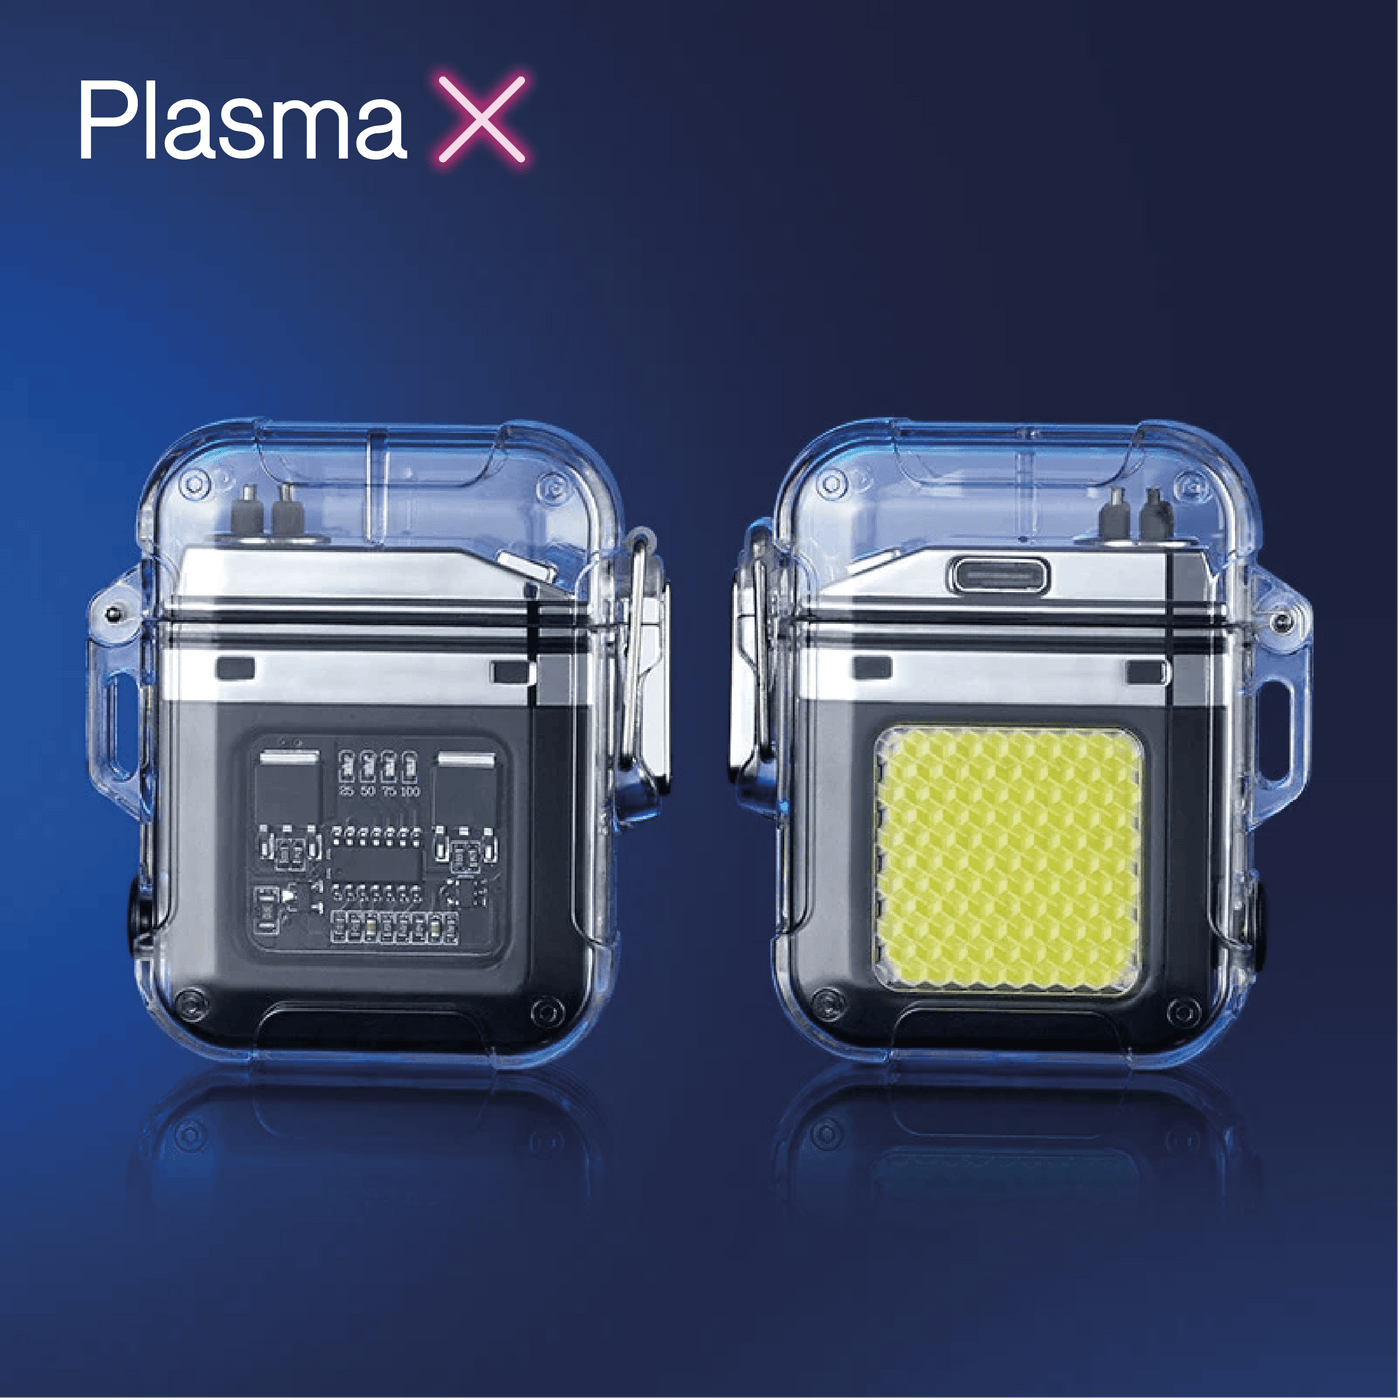 PlasmaX | Briquet électrique rechargeable - Zevessa